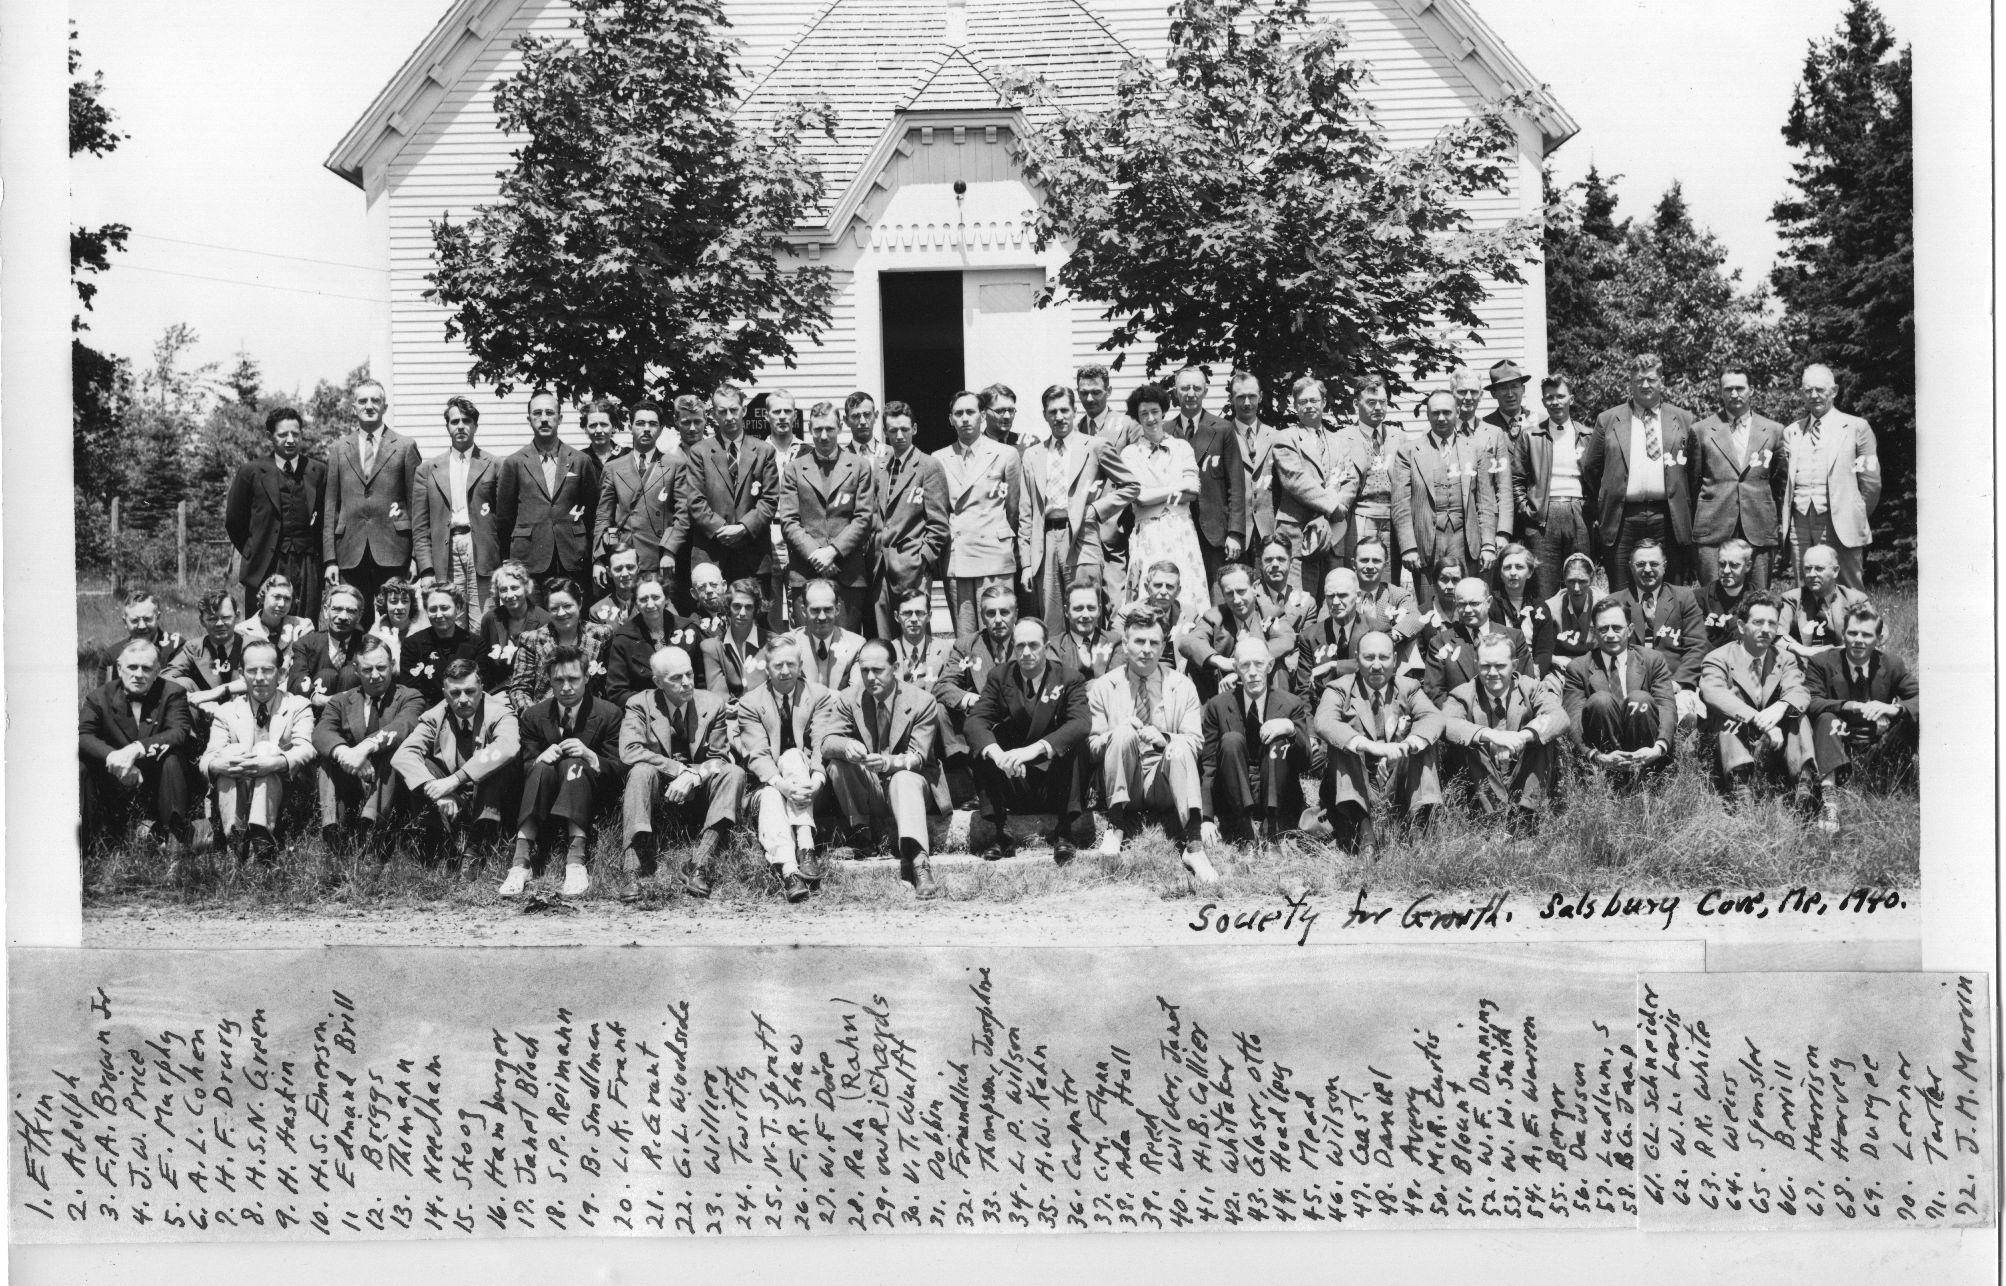 1940 SYMPOSIUM PARTICIPANTS